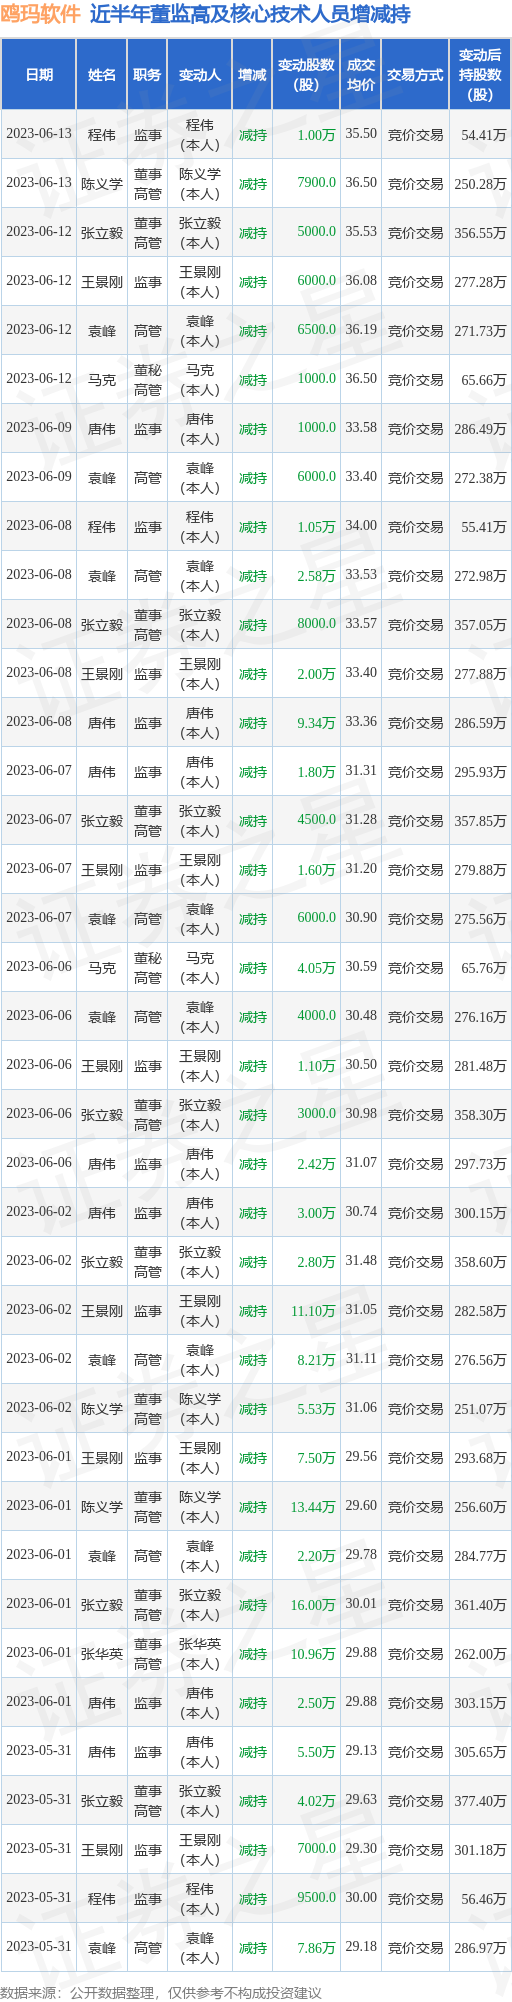 鸥玛软件：6月13日公司高管陈义学、程伟减持公司股份合计1.79万股